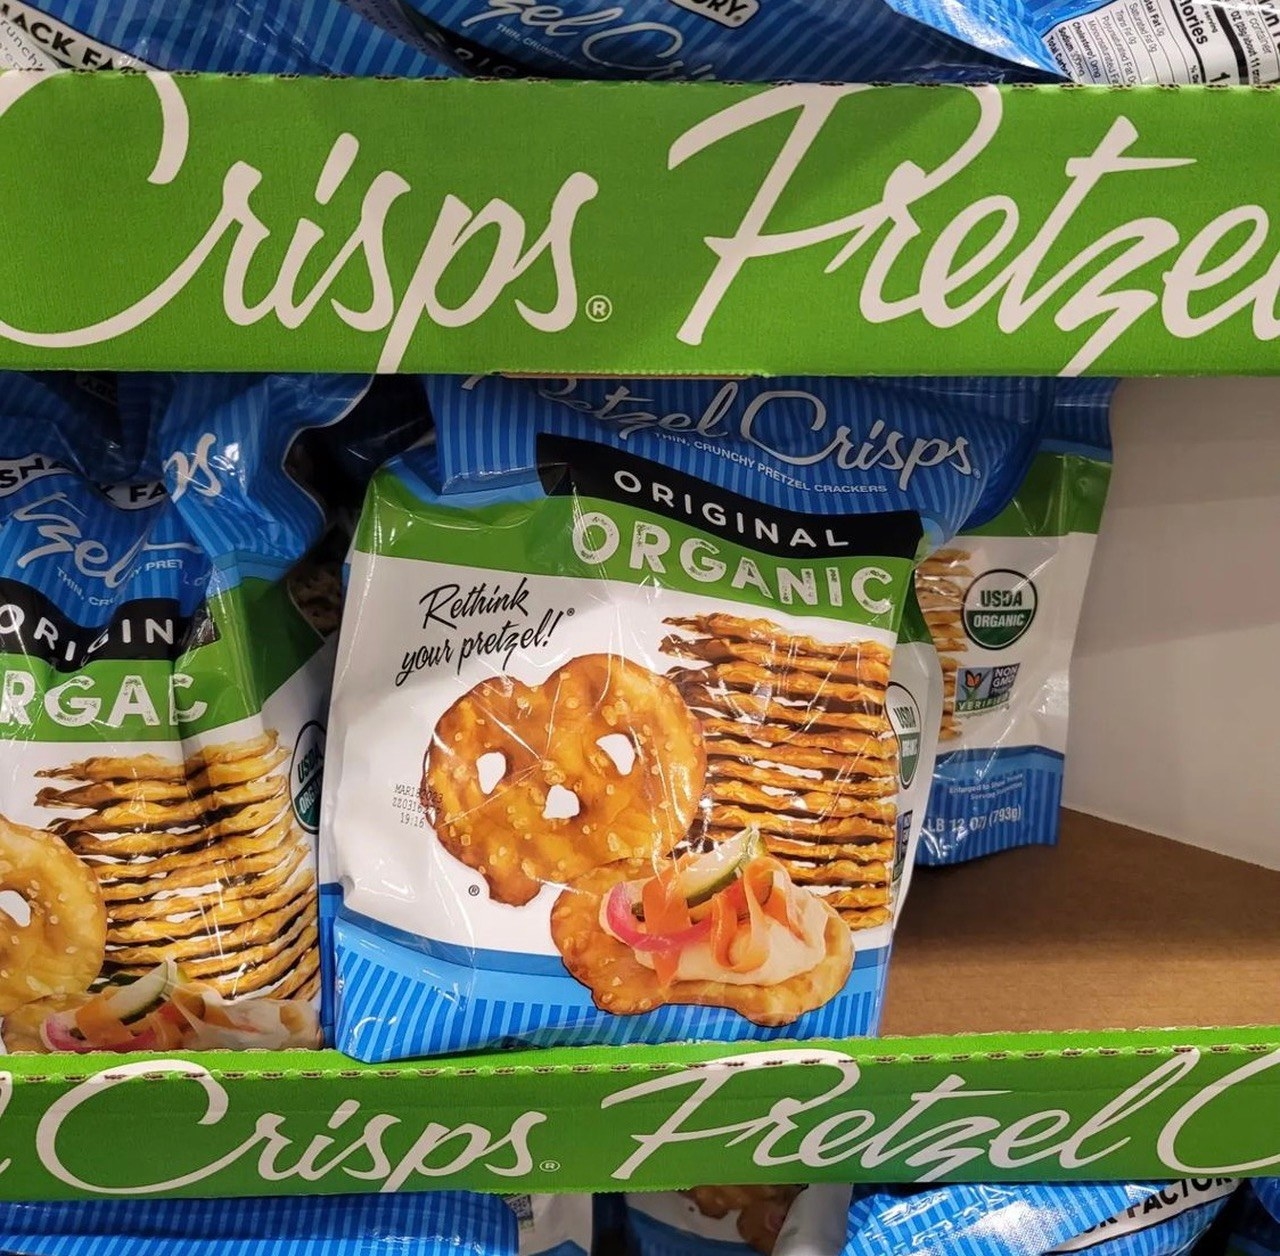 A bag of Pretzel Crisps